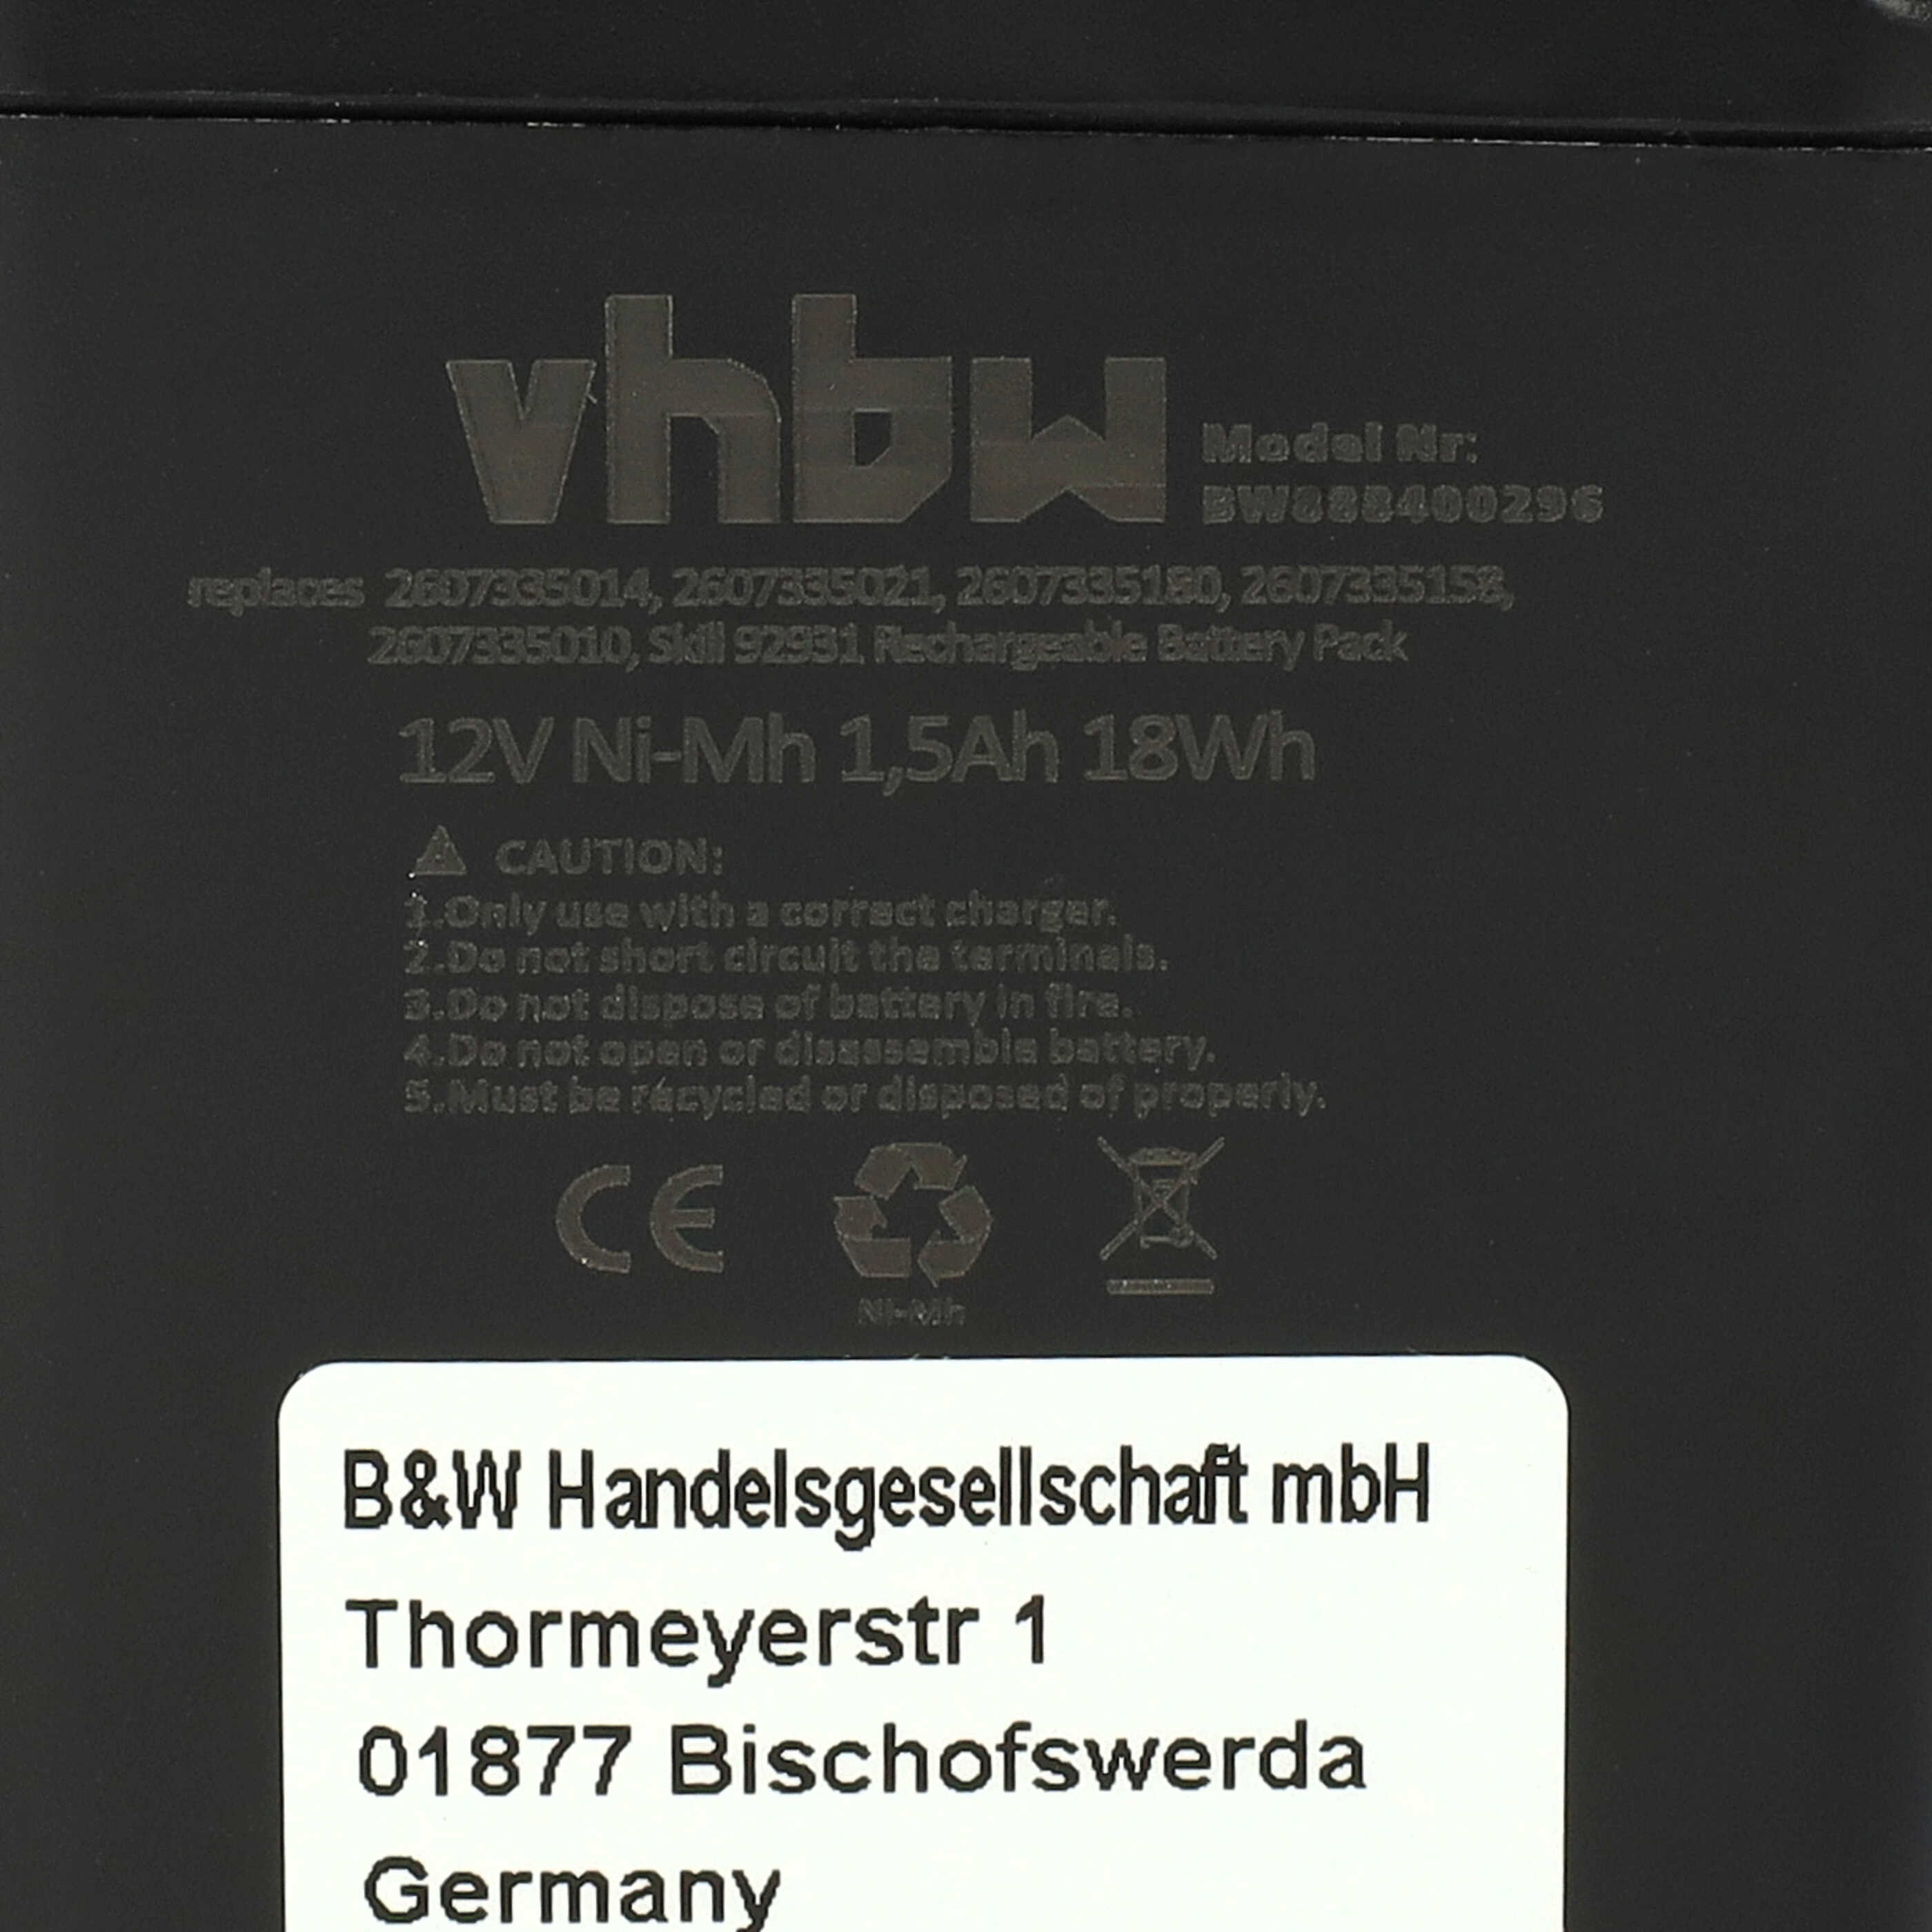 Batteria per attrezzo sostituisce Bosch 2 607 355 014, 2 607 335 180, 2 607 335 021 - 1500 mAh, 12 V, NiMH